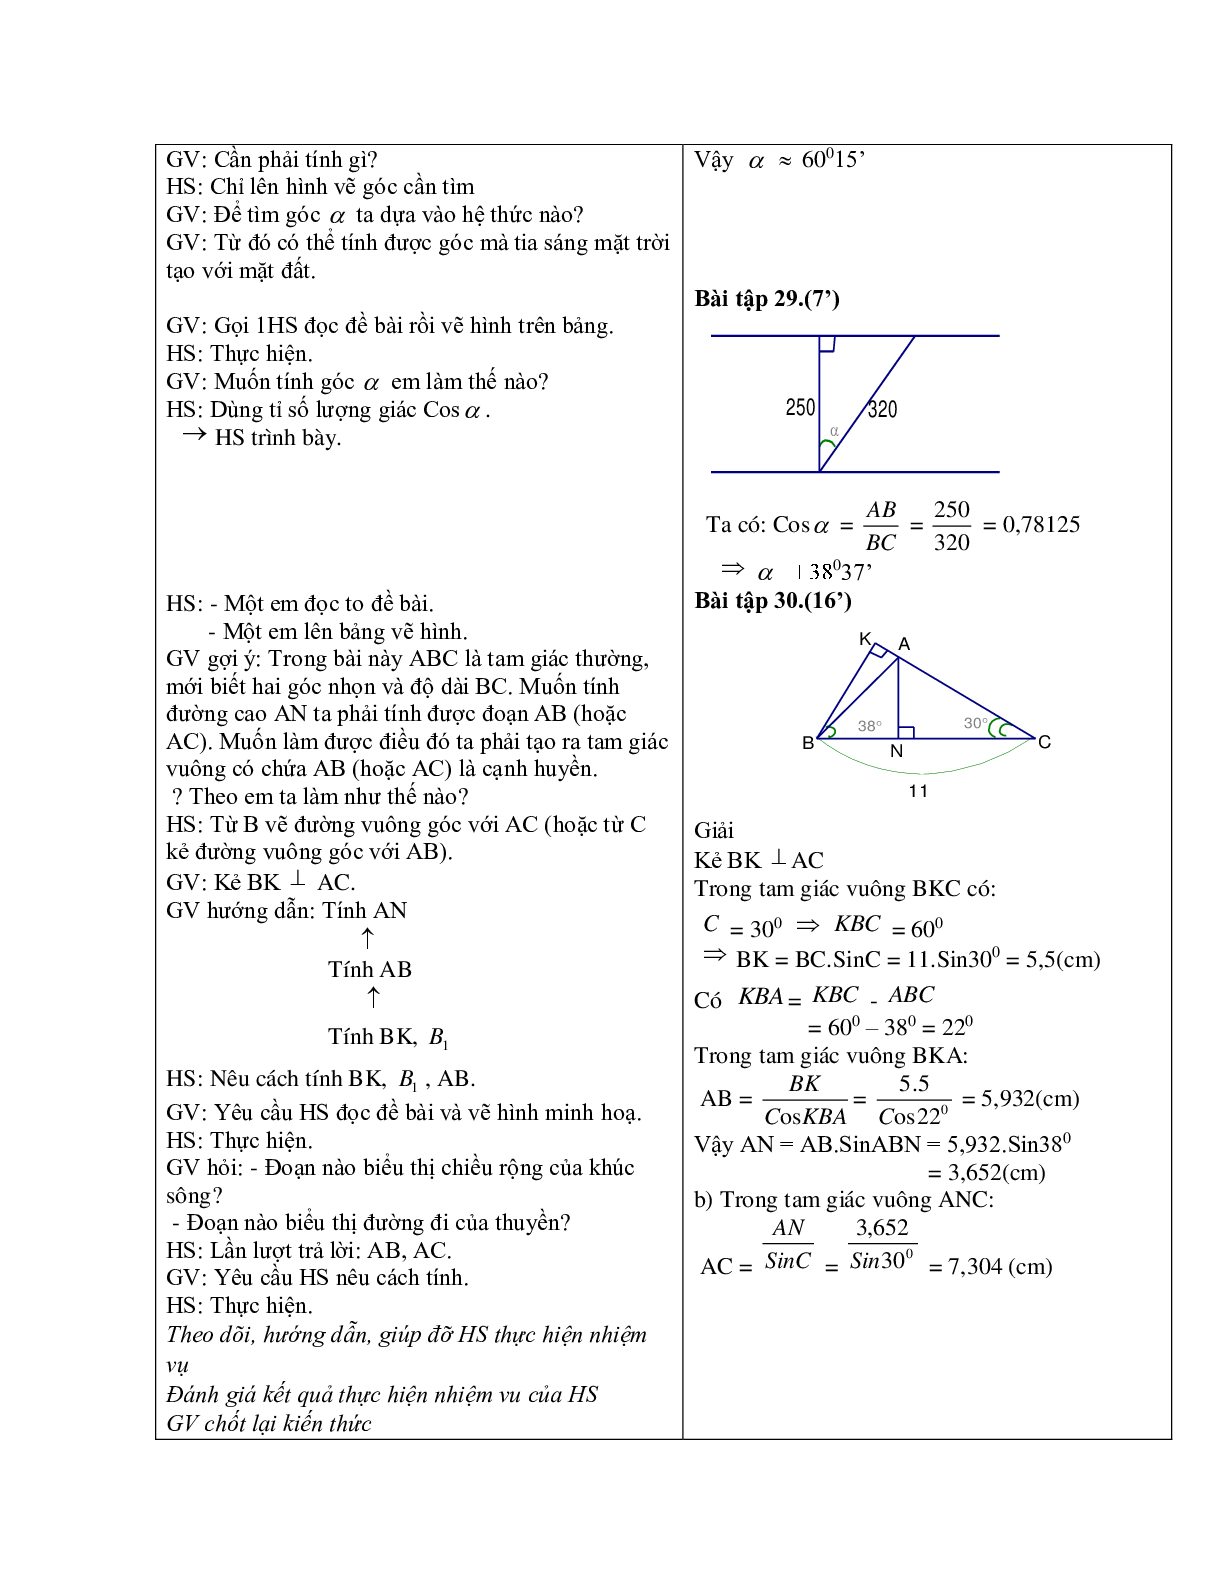 Giáo án Hình học 9 chương 1 bài 4: Một số hệ thức về cạnh và góc trong tam giác vuông mới nhất (trang 6)